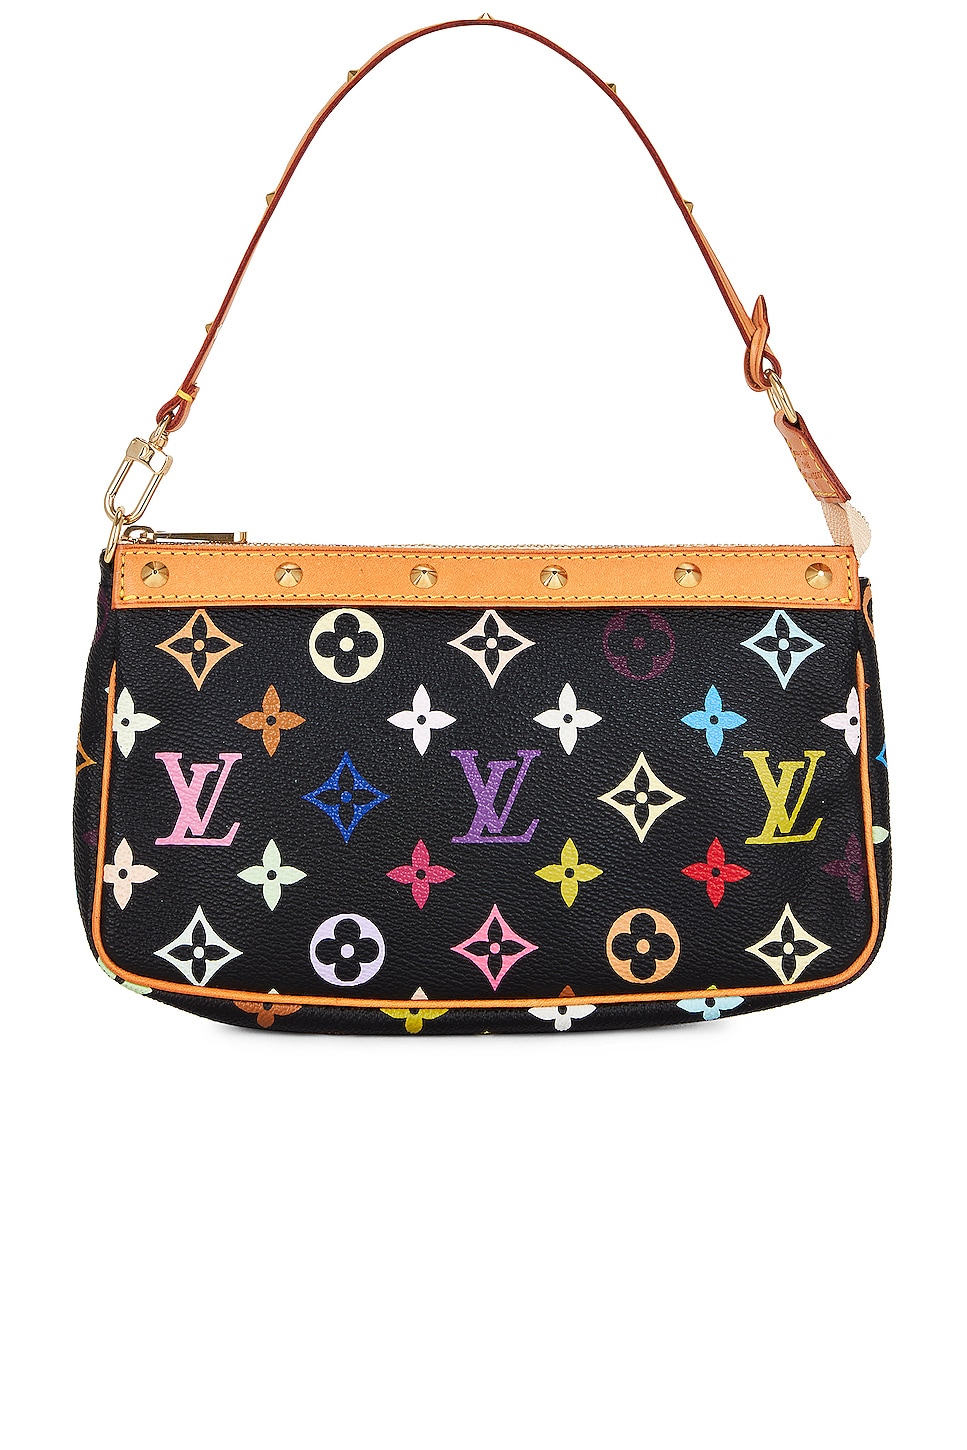 Louis Vuitton, Bags, Louis Vuitton Multicolor Black Monogram Purse